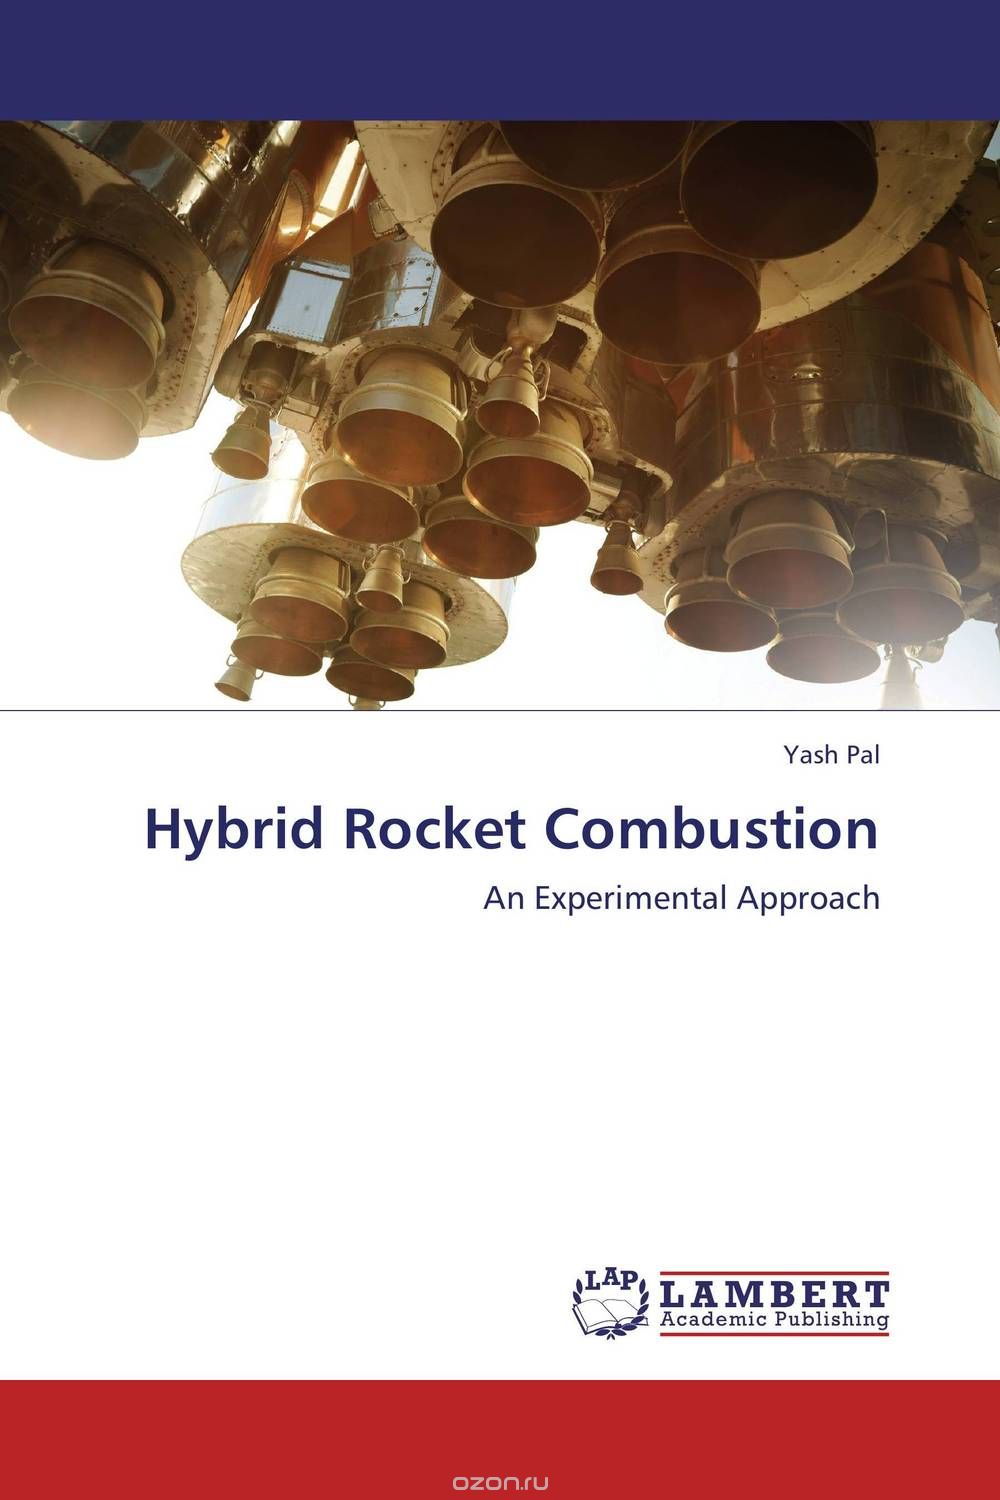 Hybrid Rocket Combustion